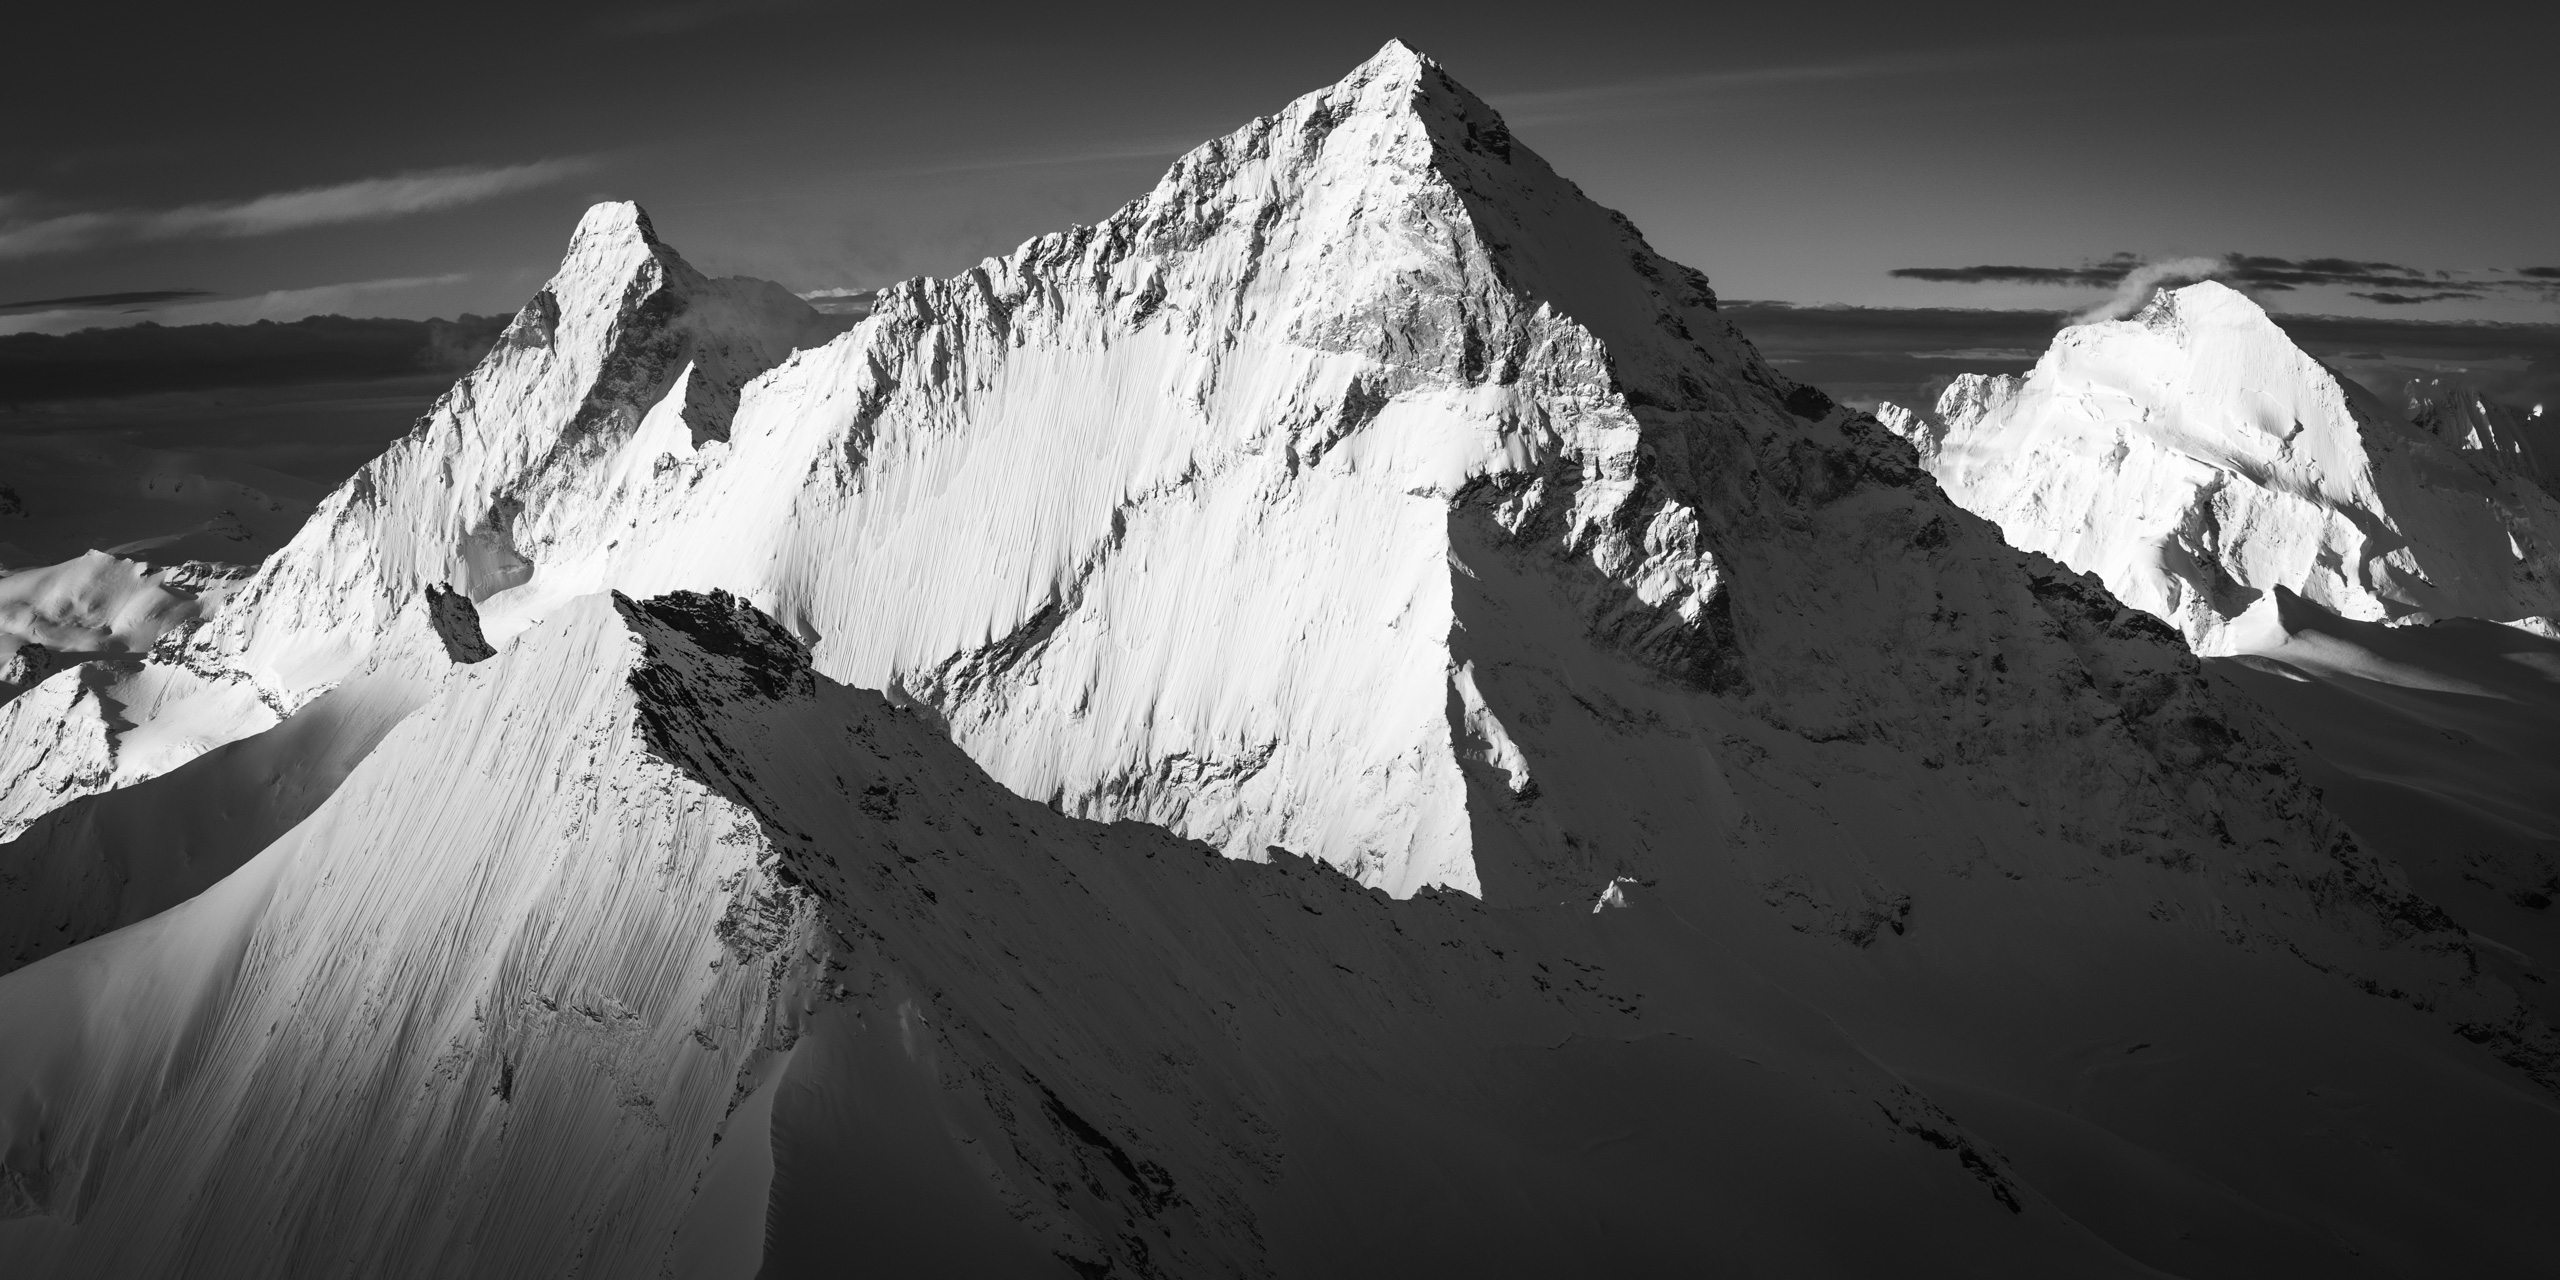 Encadrement photo professionnel du Mont Cervin et de la dent blanche dans les alpes en noir et blanc